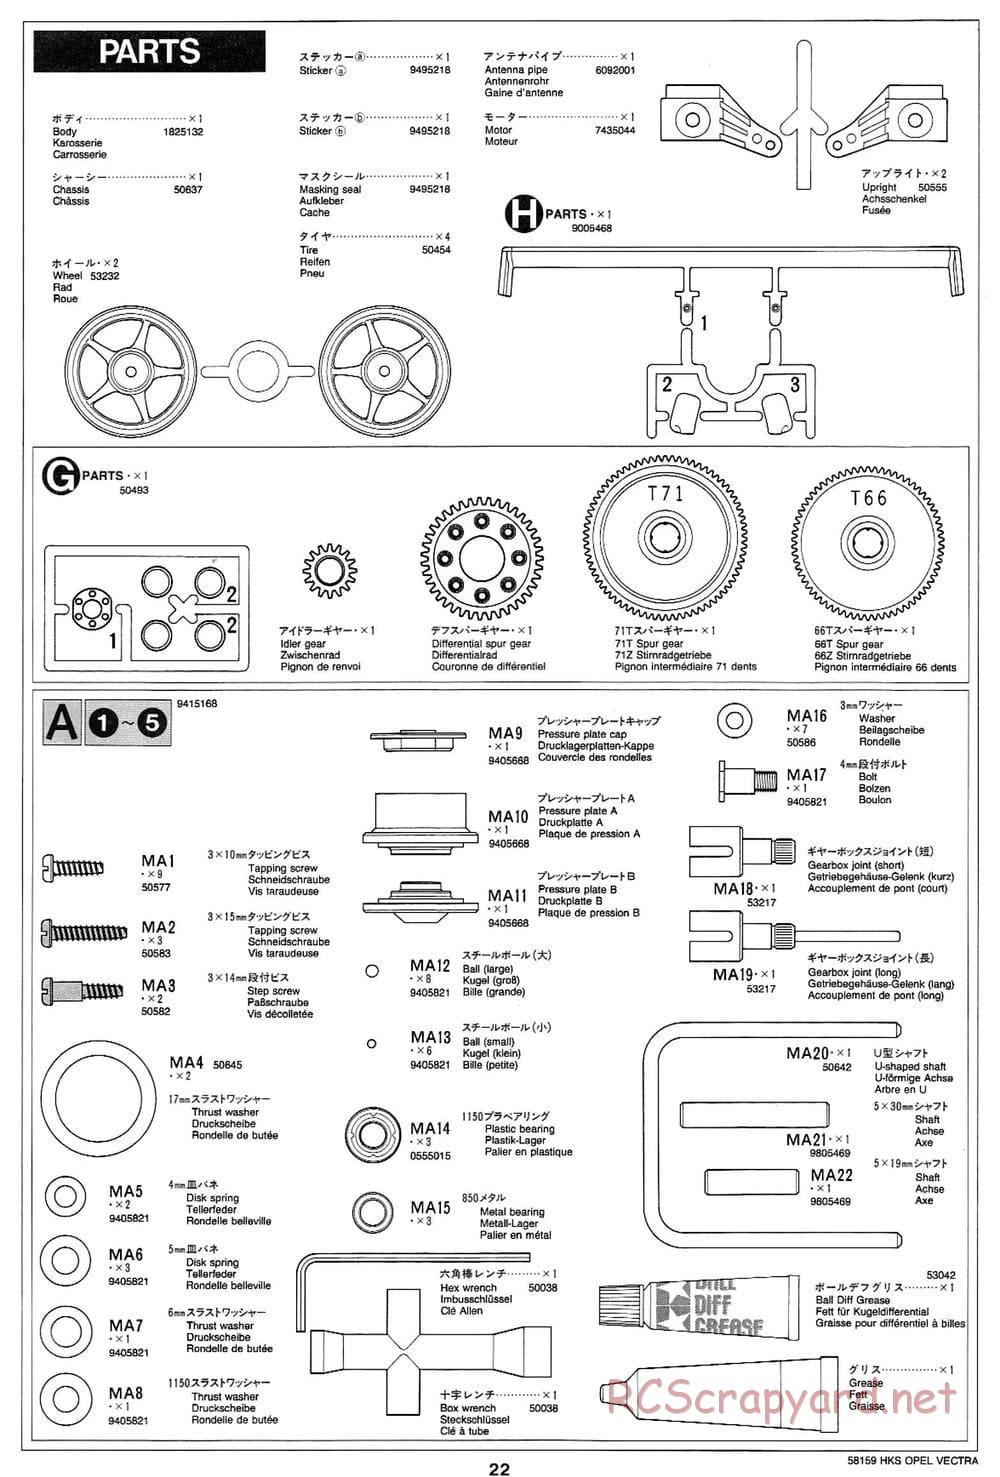 Tamiya - HKS Opel Vectra JTCC - FF-01 Chassis - Manual - Page 22